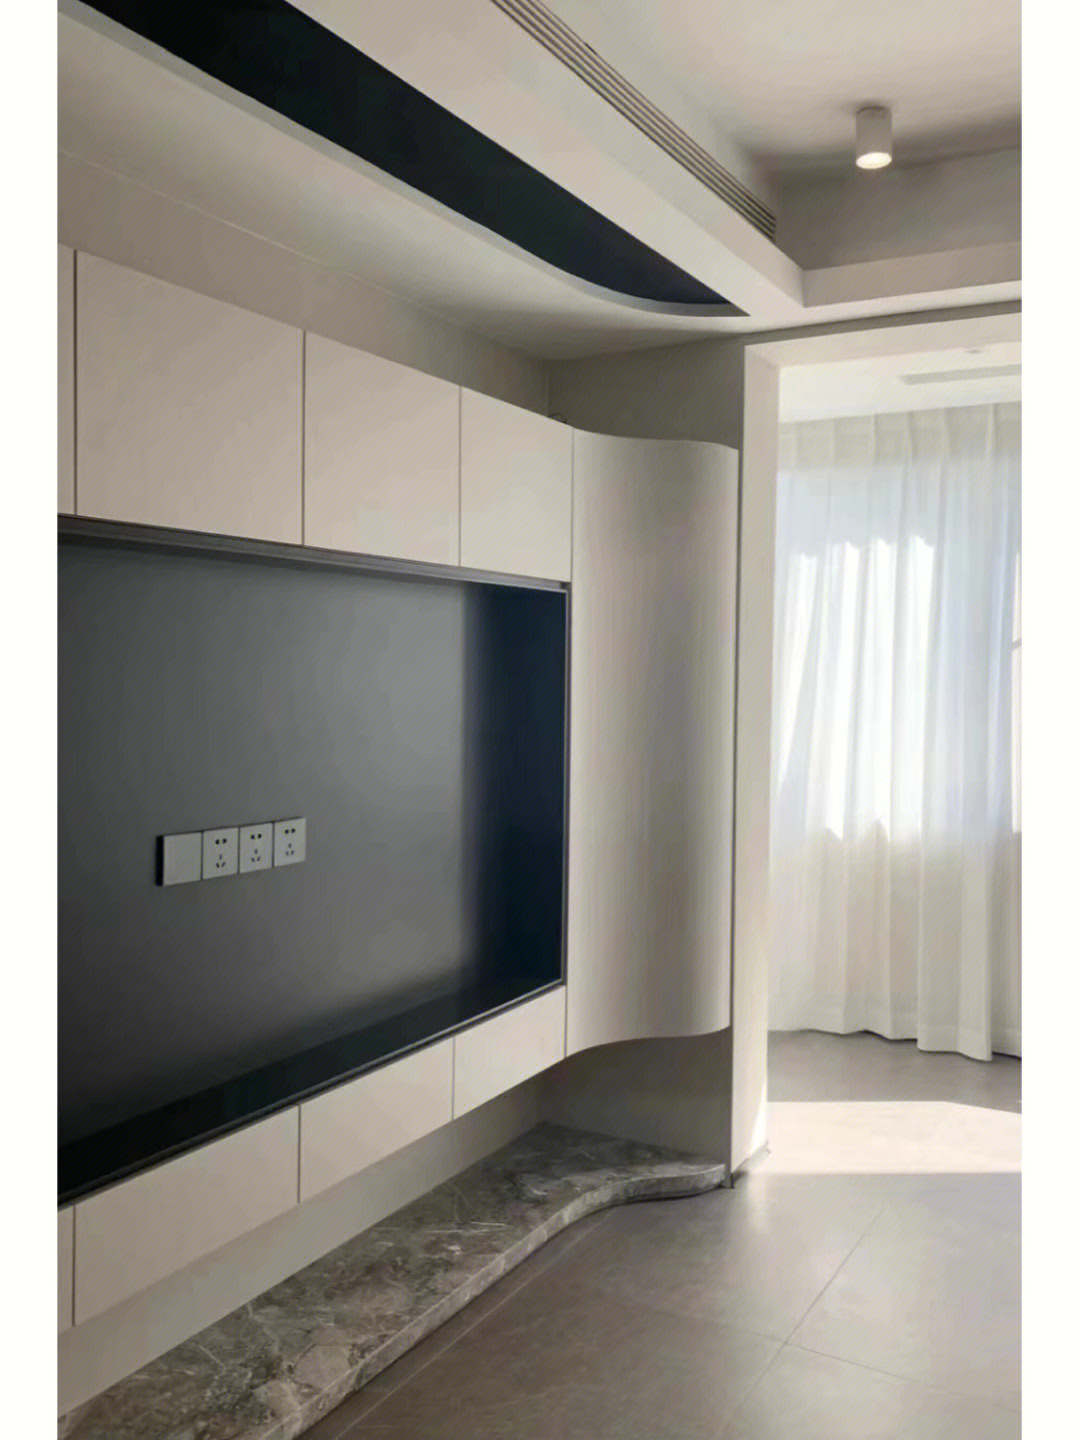 弧形悬空电视背景墙,设计美学的实际应用